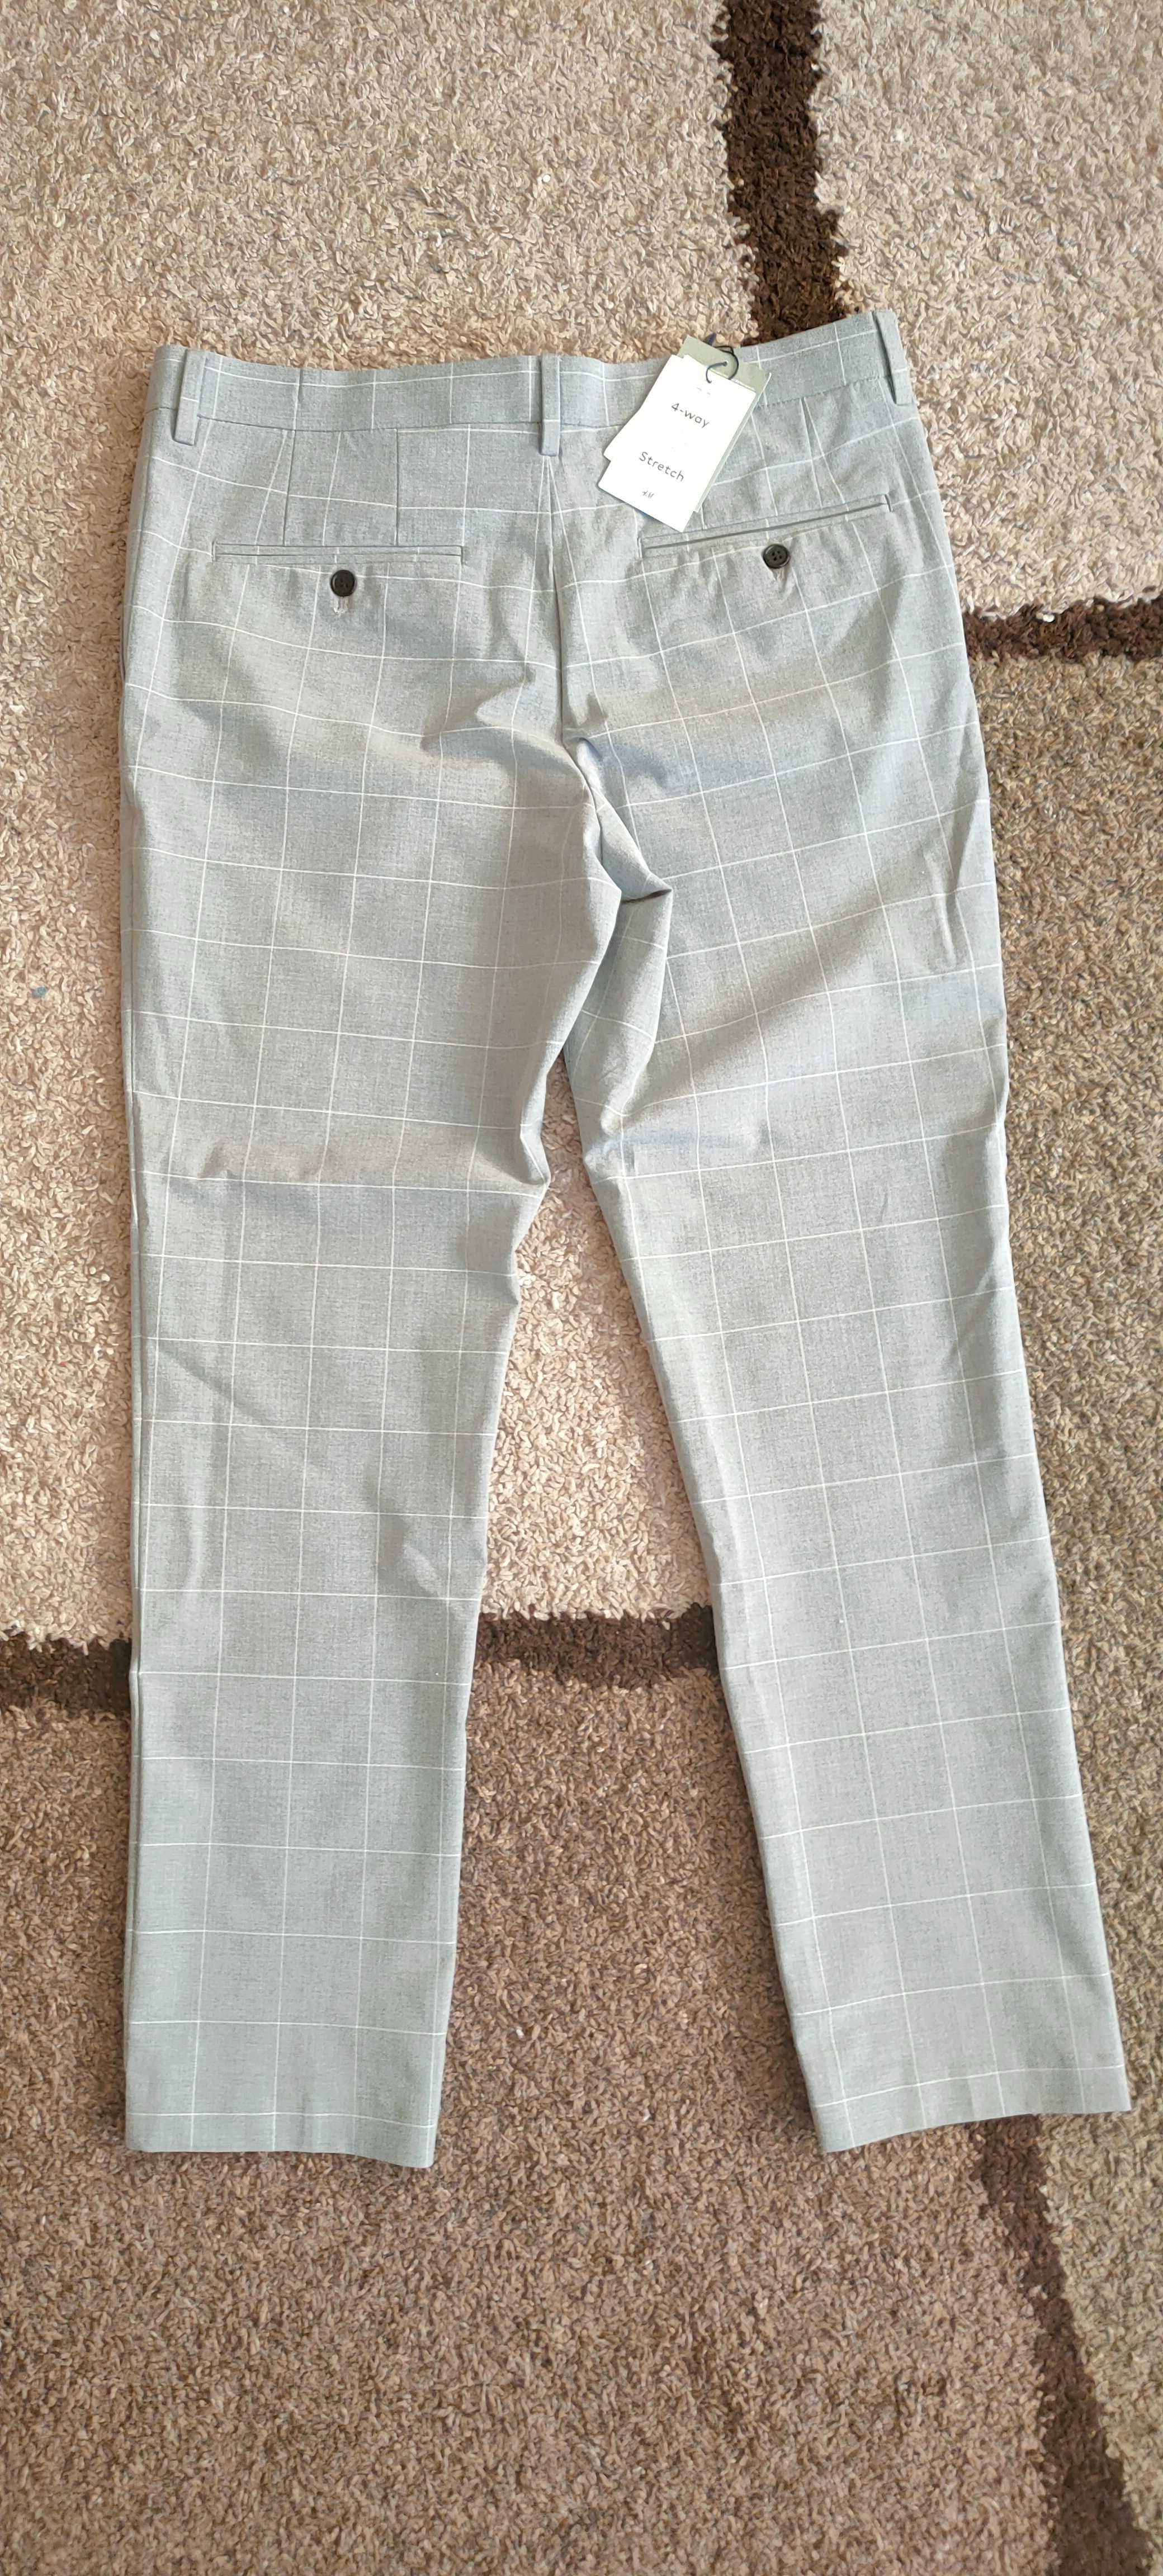 Szare męskie spodnie H&M w kratę - slim fit - NOWE - rozmiar 34